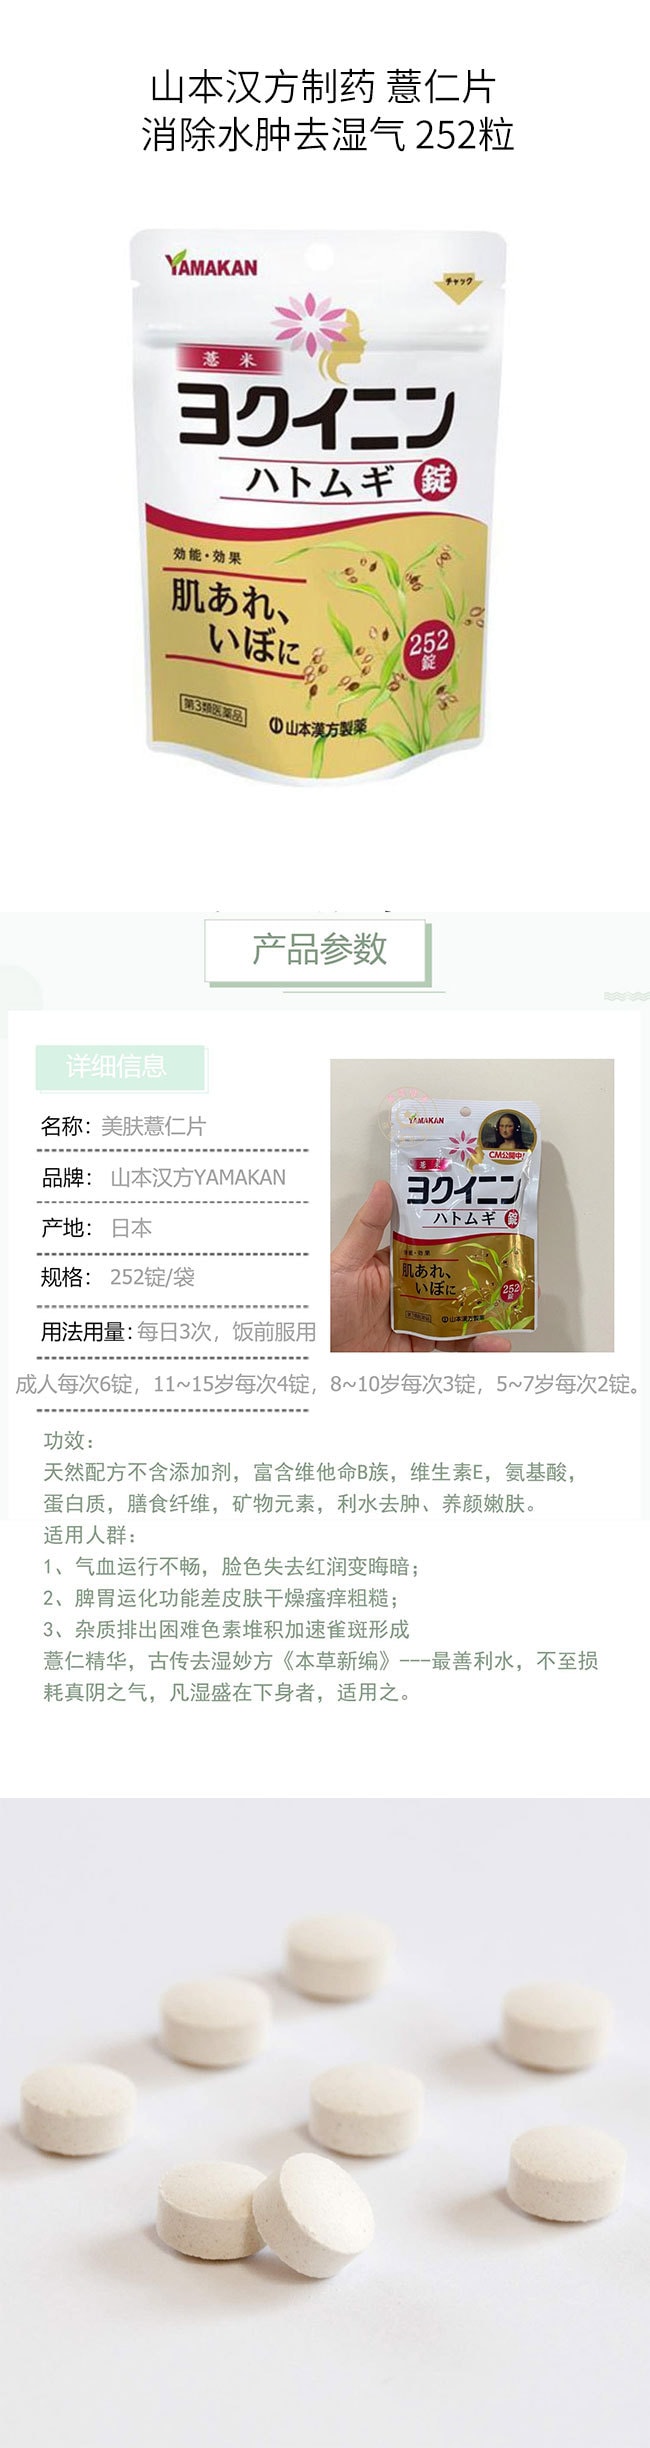 【日本直邮】YAMAMOTO 山本汉方制药 薏仁片 消除水肿去湿气 252粒